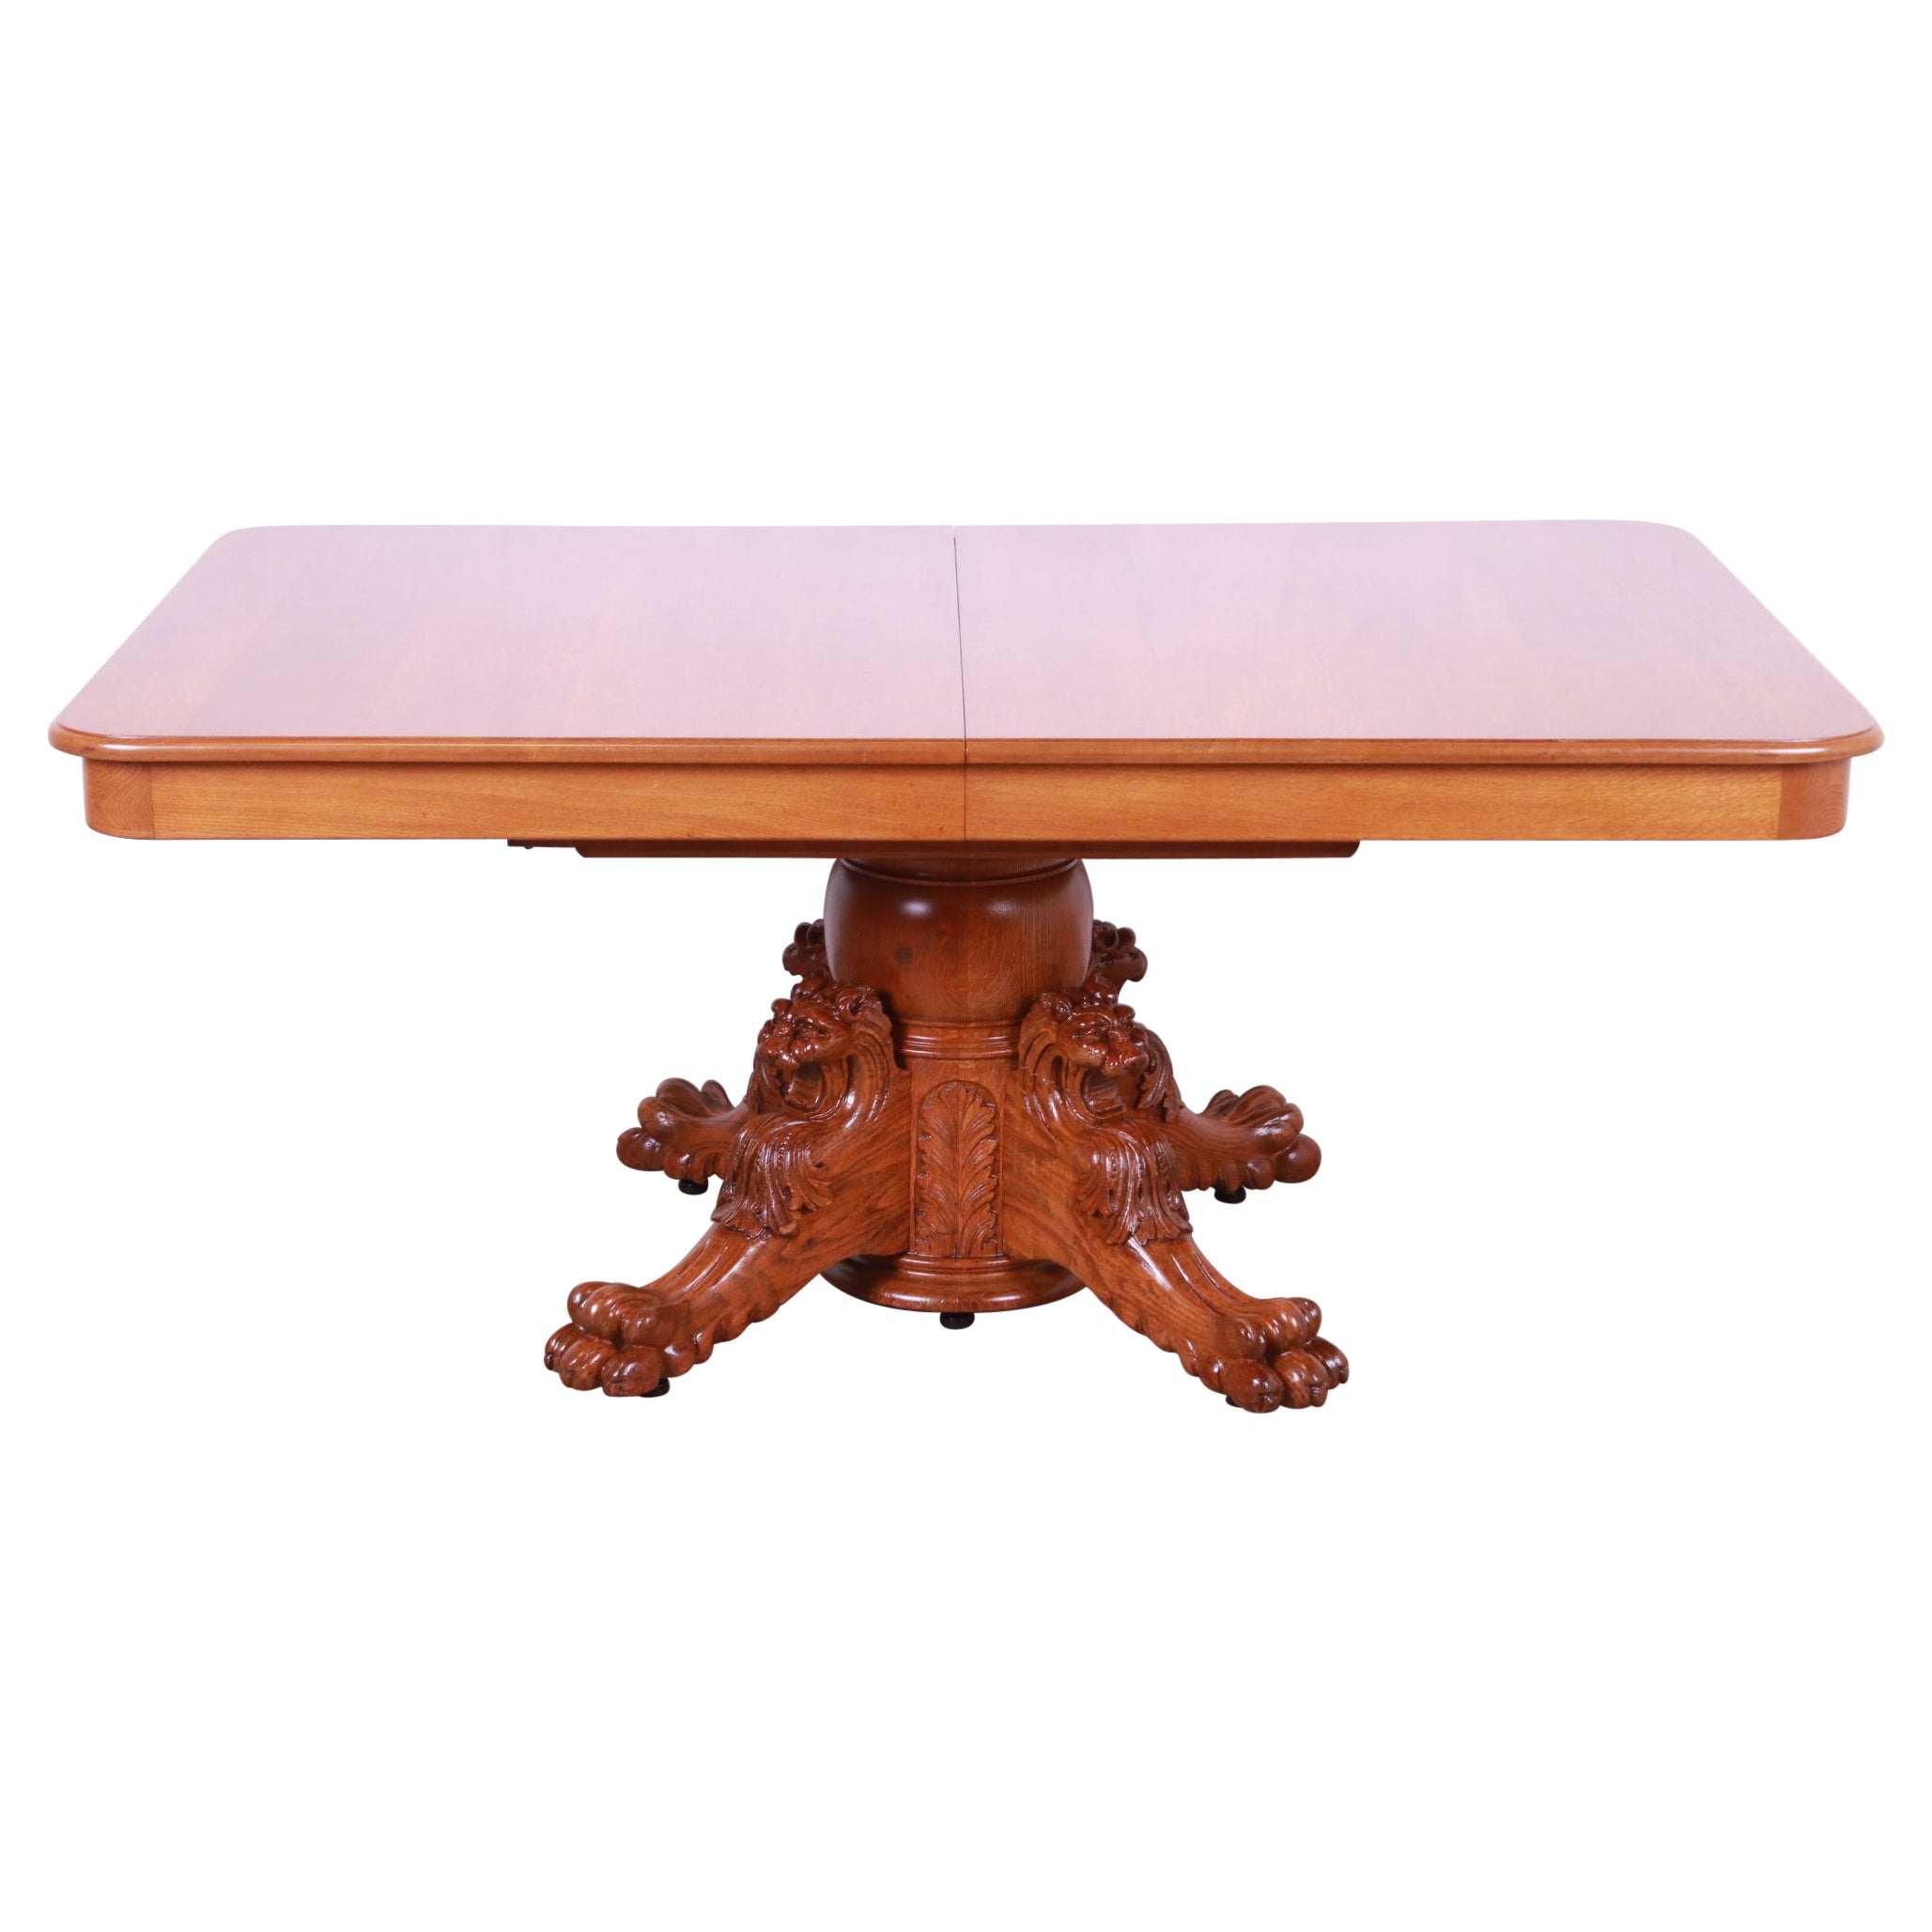 R.J. Horner Antique Victorian Oak Pedestal Dining Table with Carved Lions For Sale